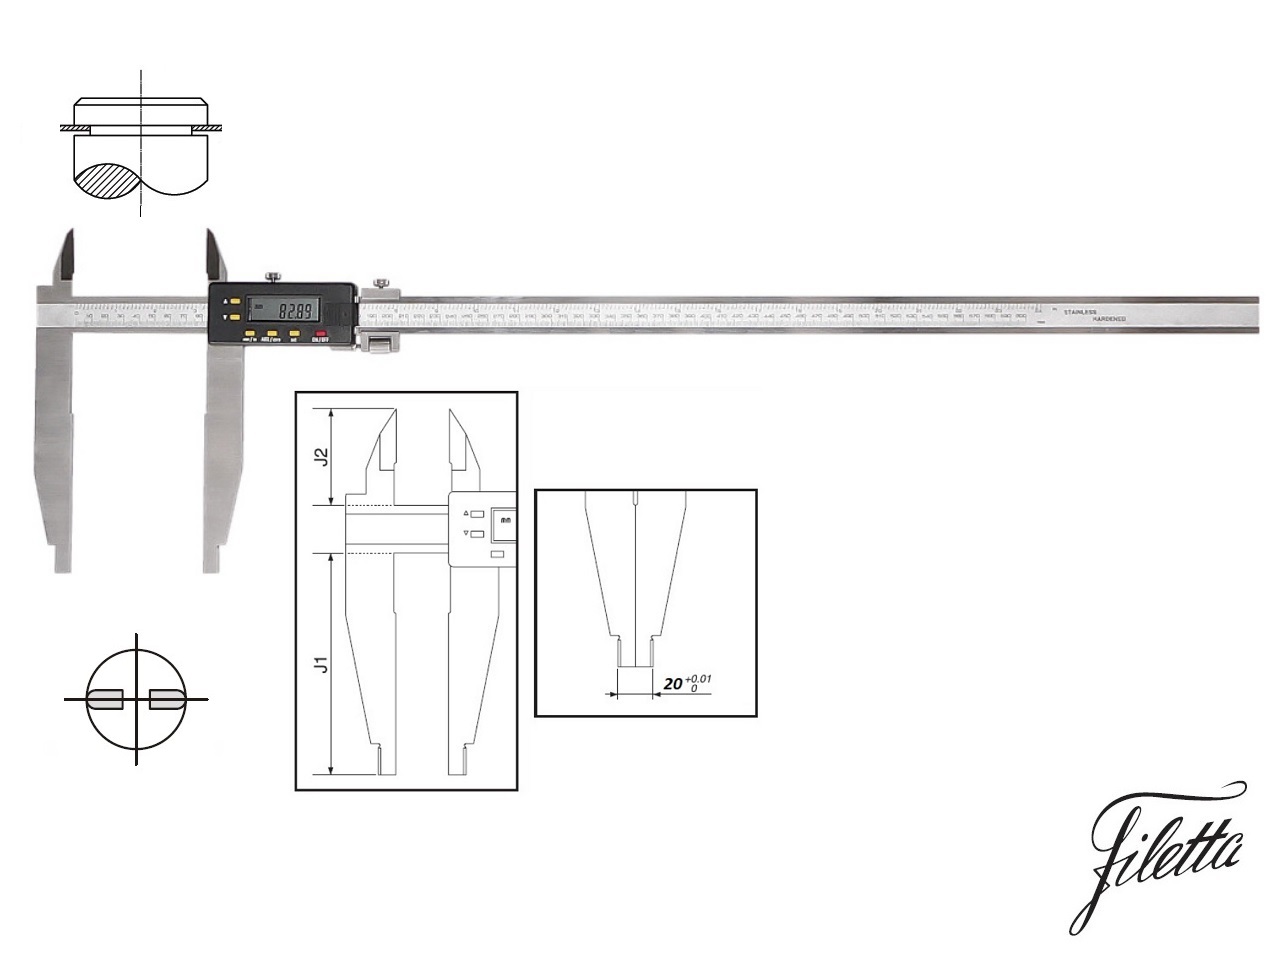 Digitální posuvné měřítko Filetta 0-500 mm s měřicími nožíky pro vnější měření